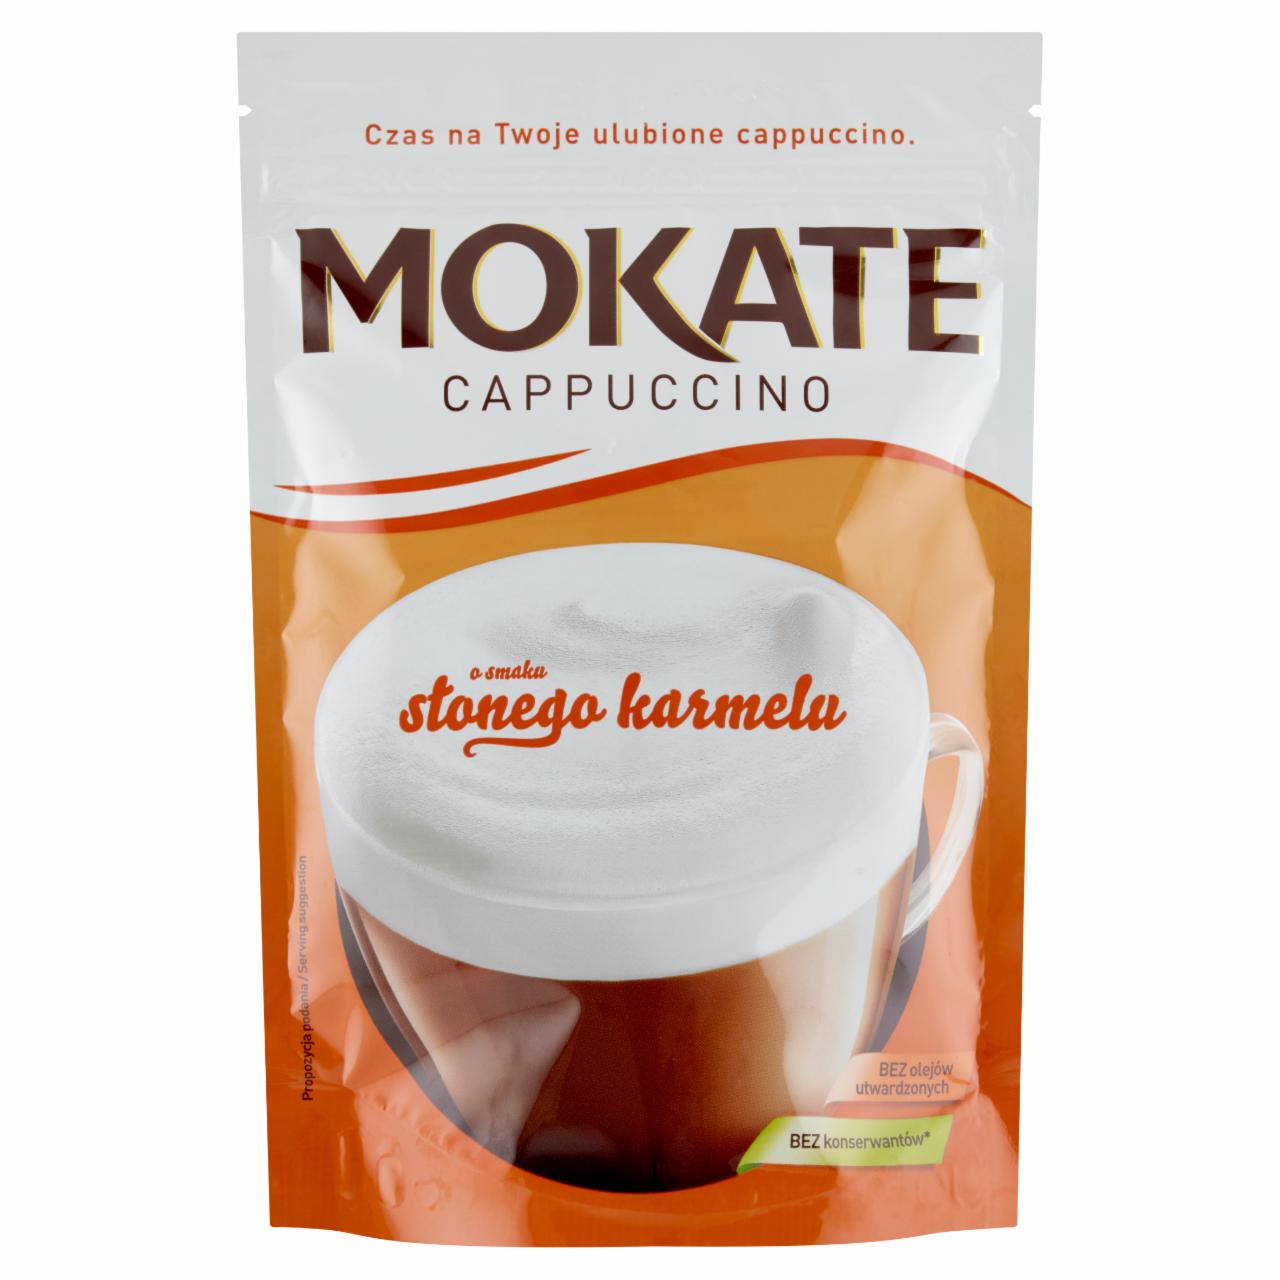 Zdjęcia - Mokate Cappuccino smak słony karmel 110 g